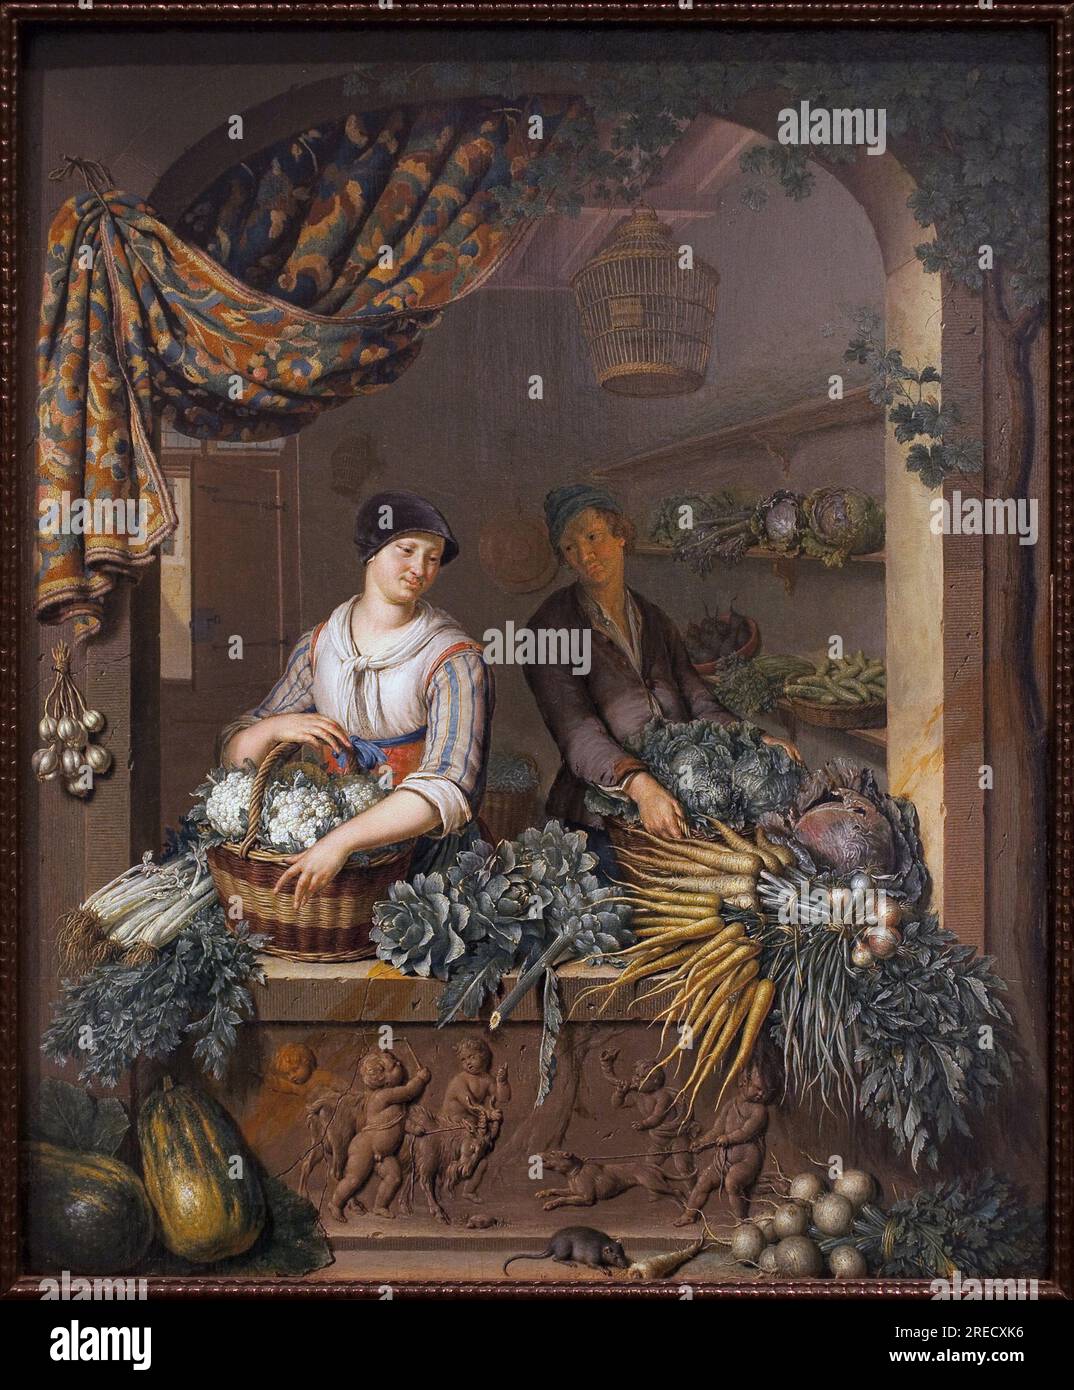 Vendeur de légumineuses. Peinture de Willem van Mieris (1662-1747), huile sur bois, 1730. Art hollandais, 18e siecle. Musée des Beaux Arts de Niort. Banque D'Images